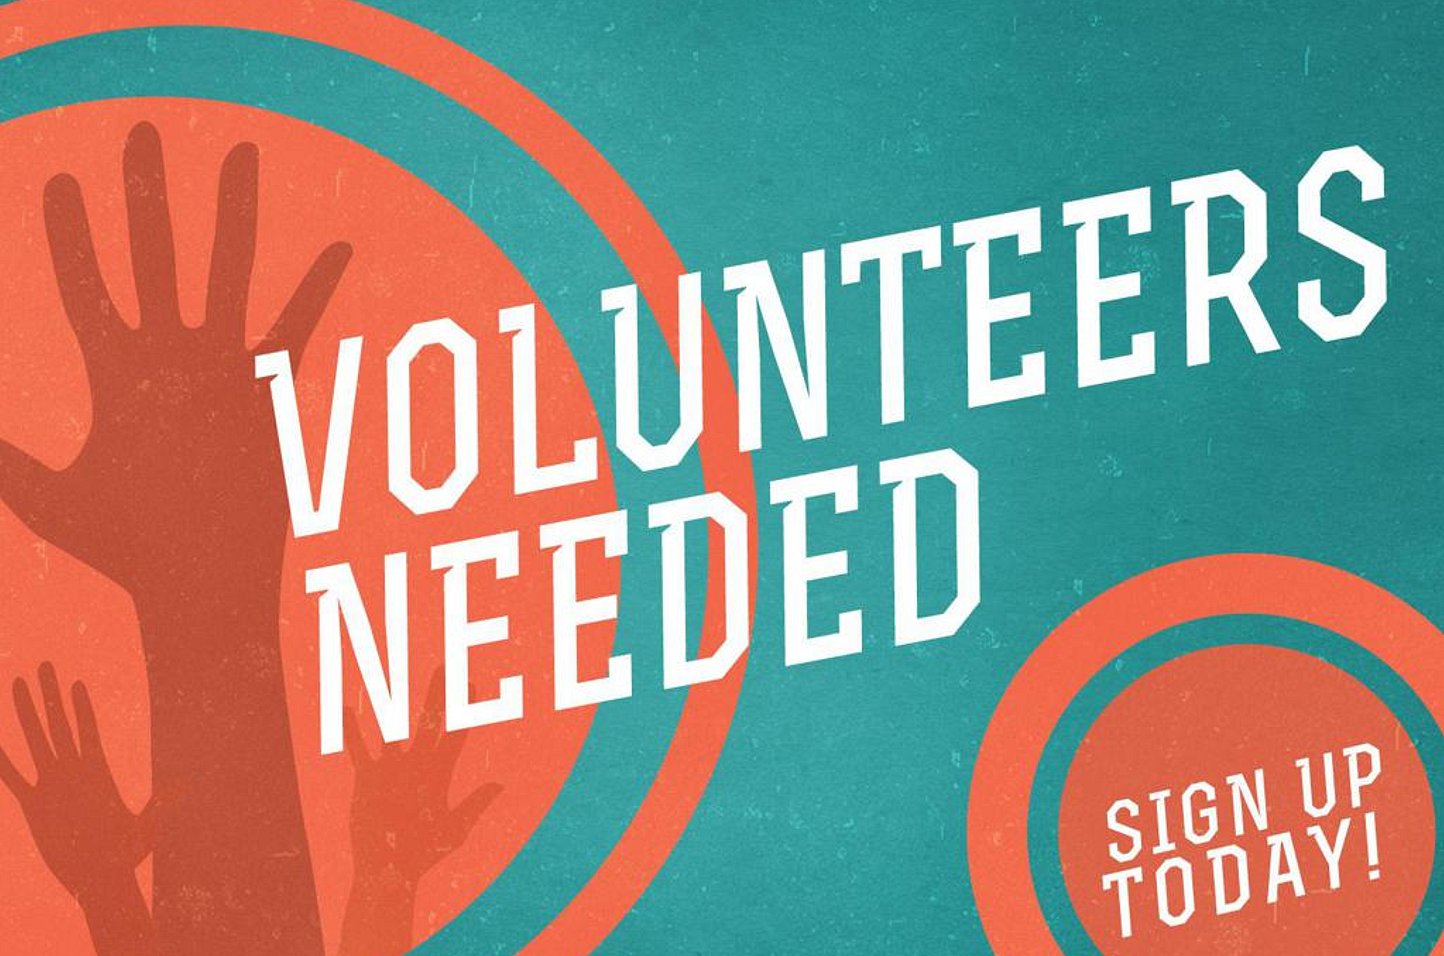 Volunteers_Needed_large